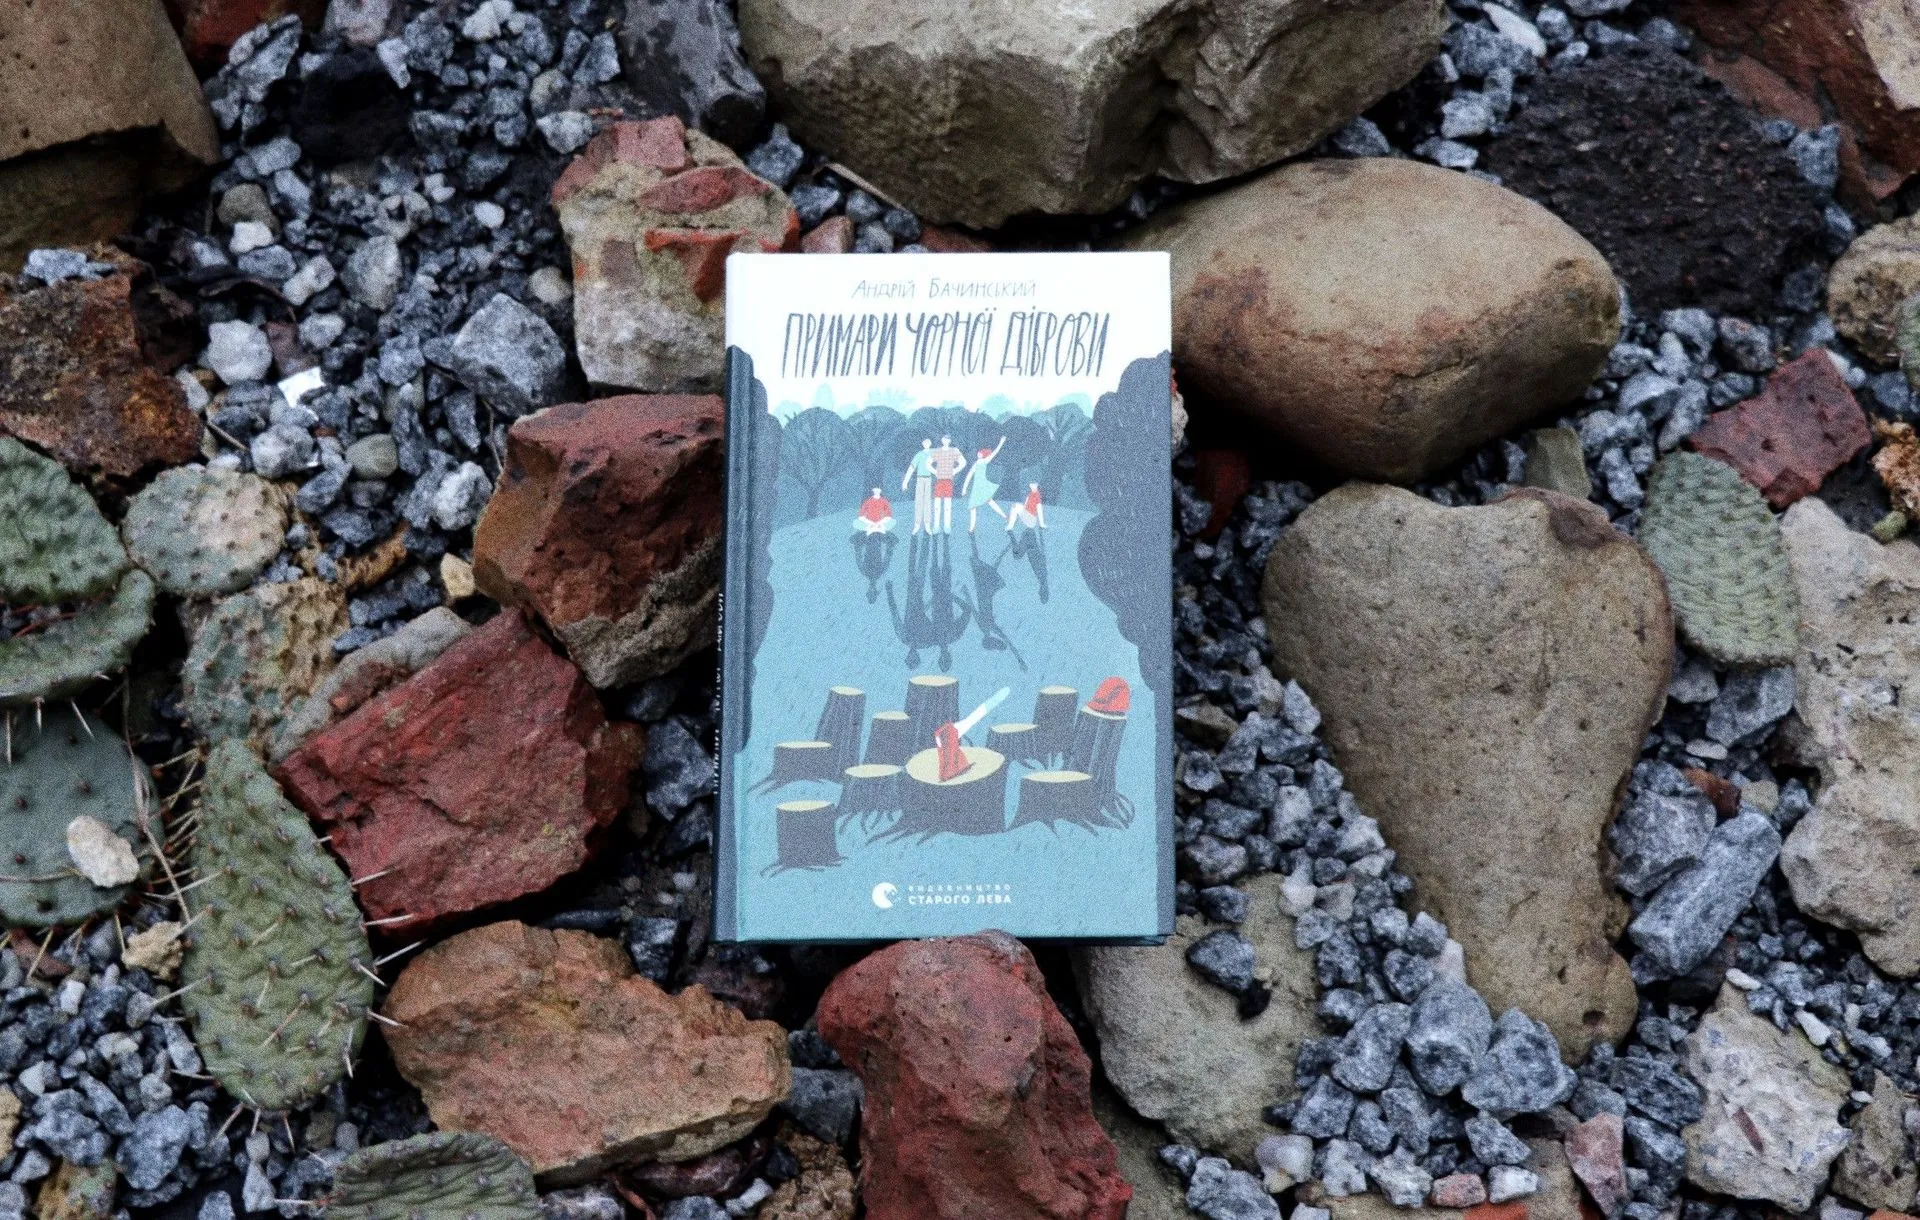 Охоронці лісу дають відсіч:  рецензія на нову книгу Андрія Бачинського «Примари Чорної діброви»